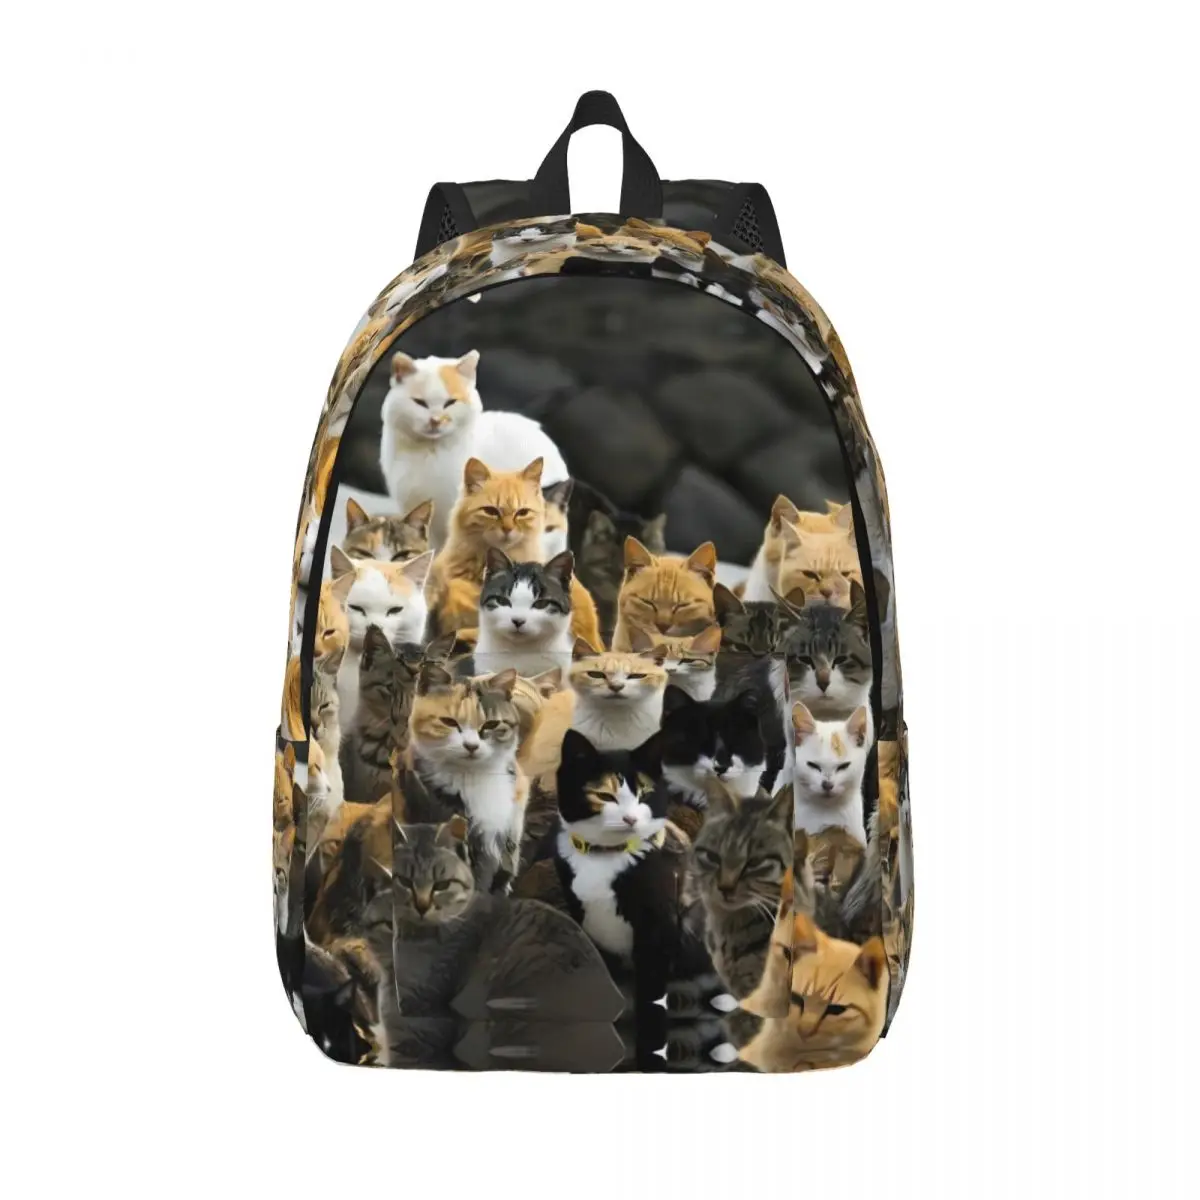 

Рюкзак унисекс с забавными животными, прочный ранец из полиэстера с объемными рисунками кошек, подходит для школы и колледжа, рождественский подарок